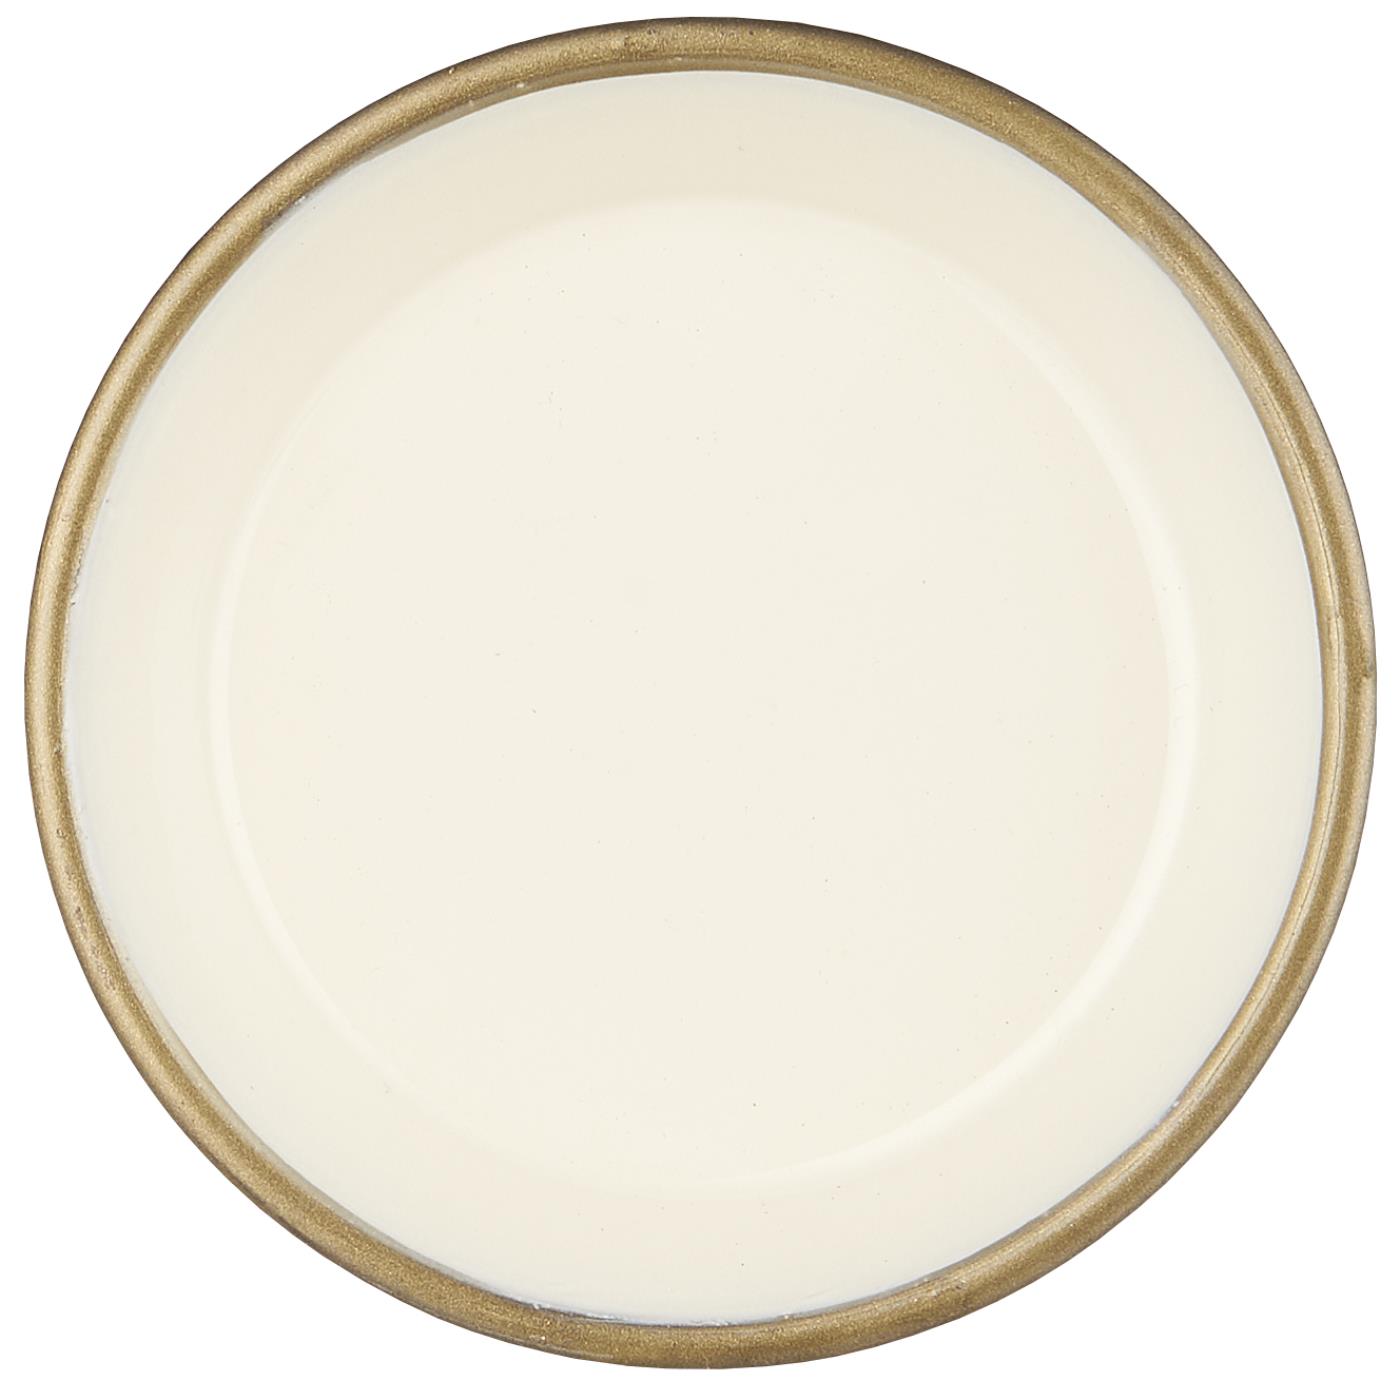 Tablett rund butter cream innen schräge Kante - Ib Laursen